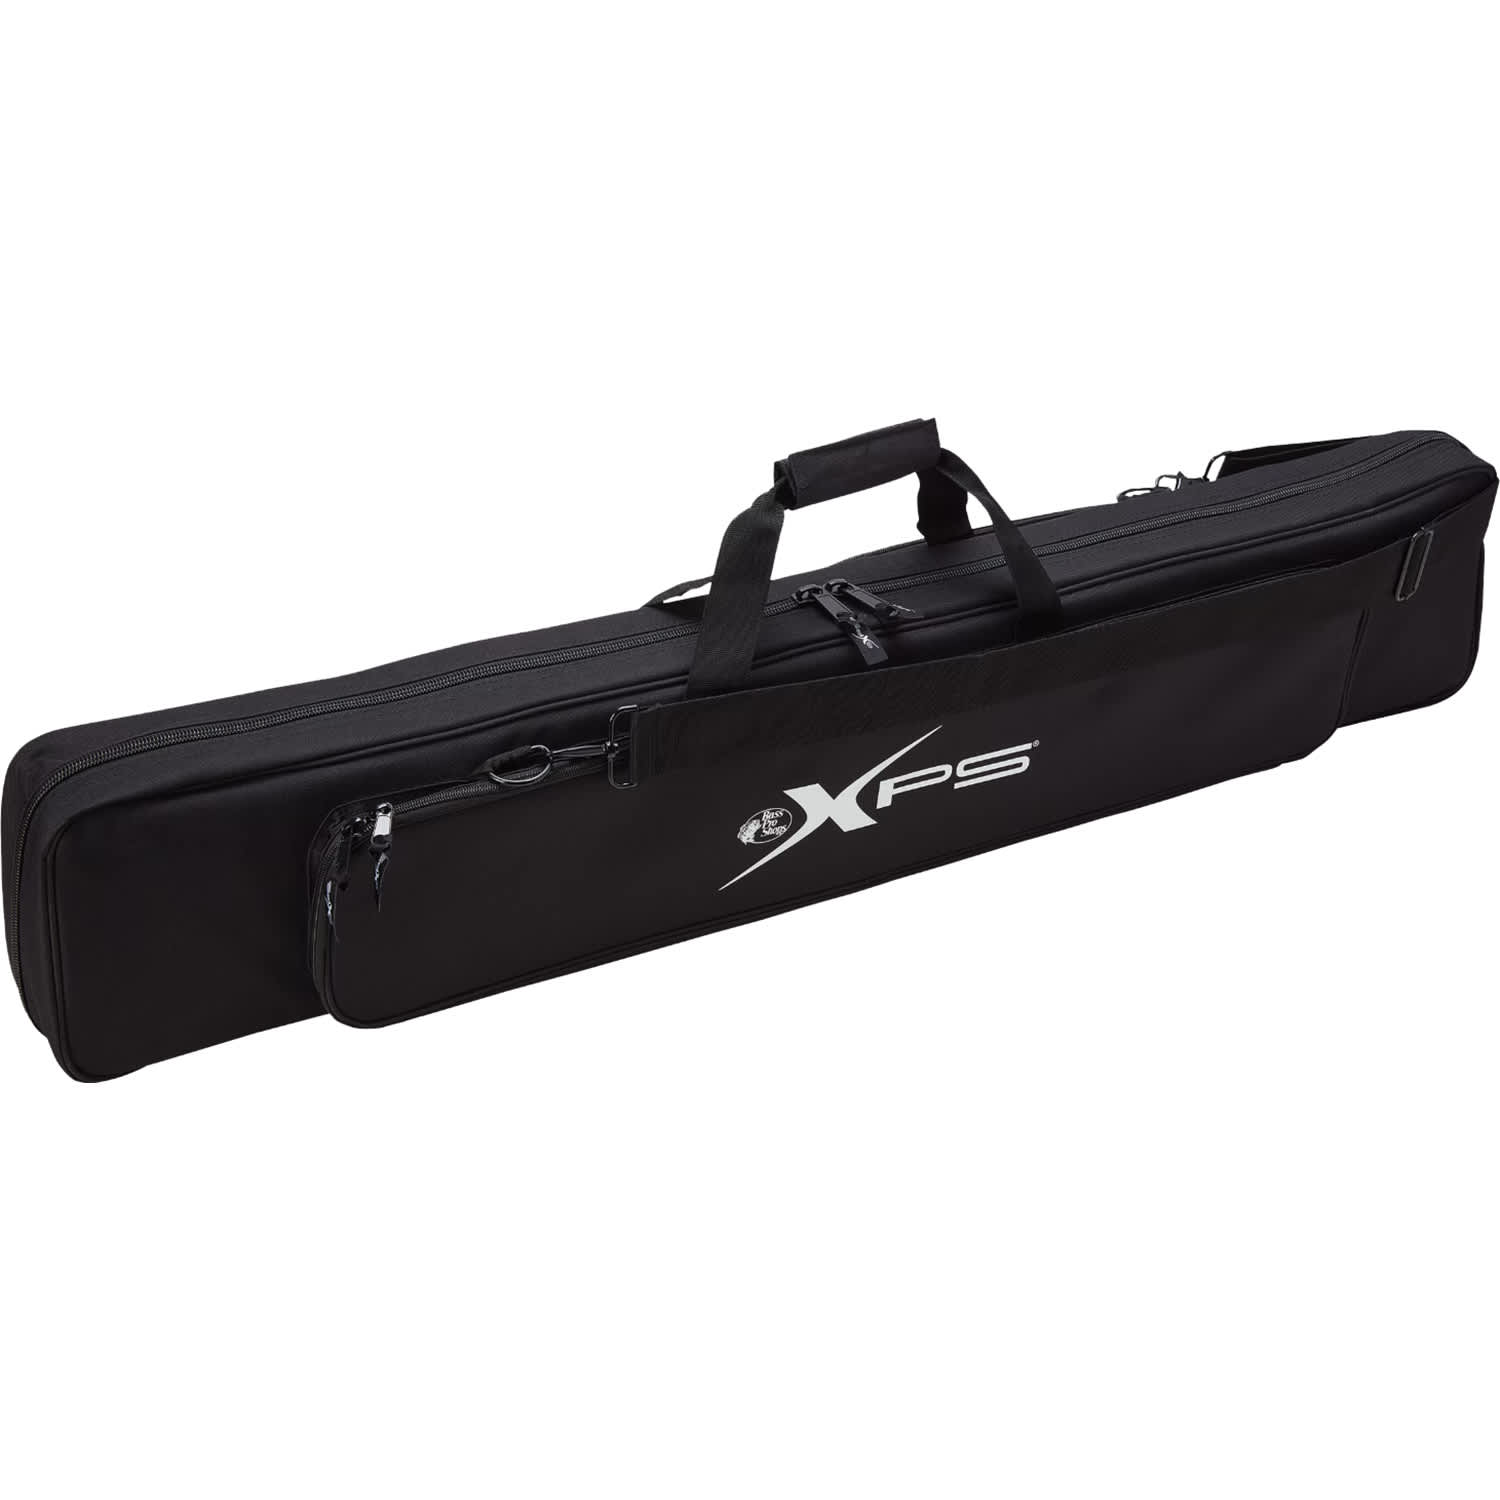 Bass Pro Shops XPS Deluxe Four-Rod Ice-Rod Bag - Cabelas - XPS 